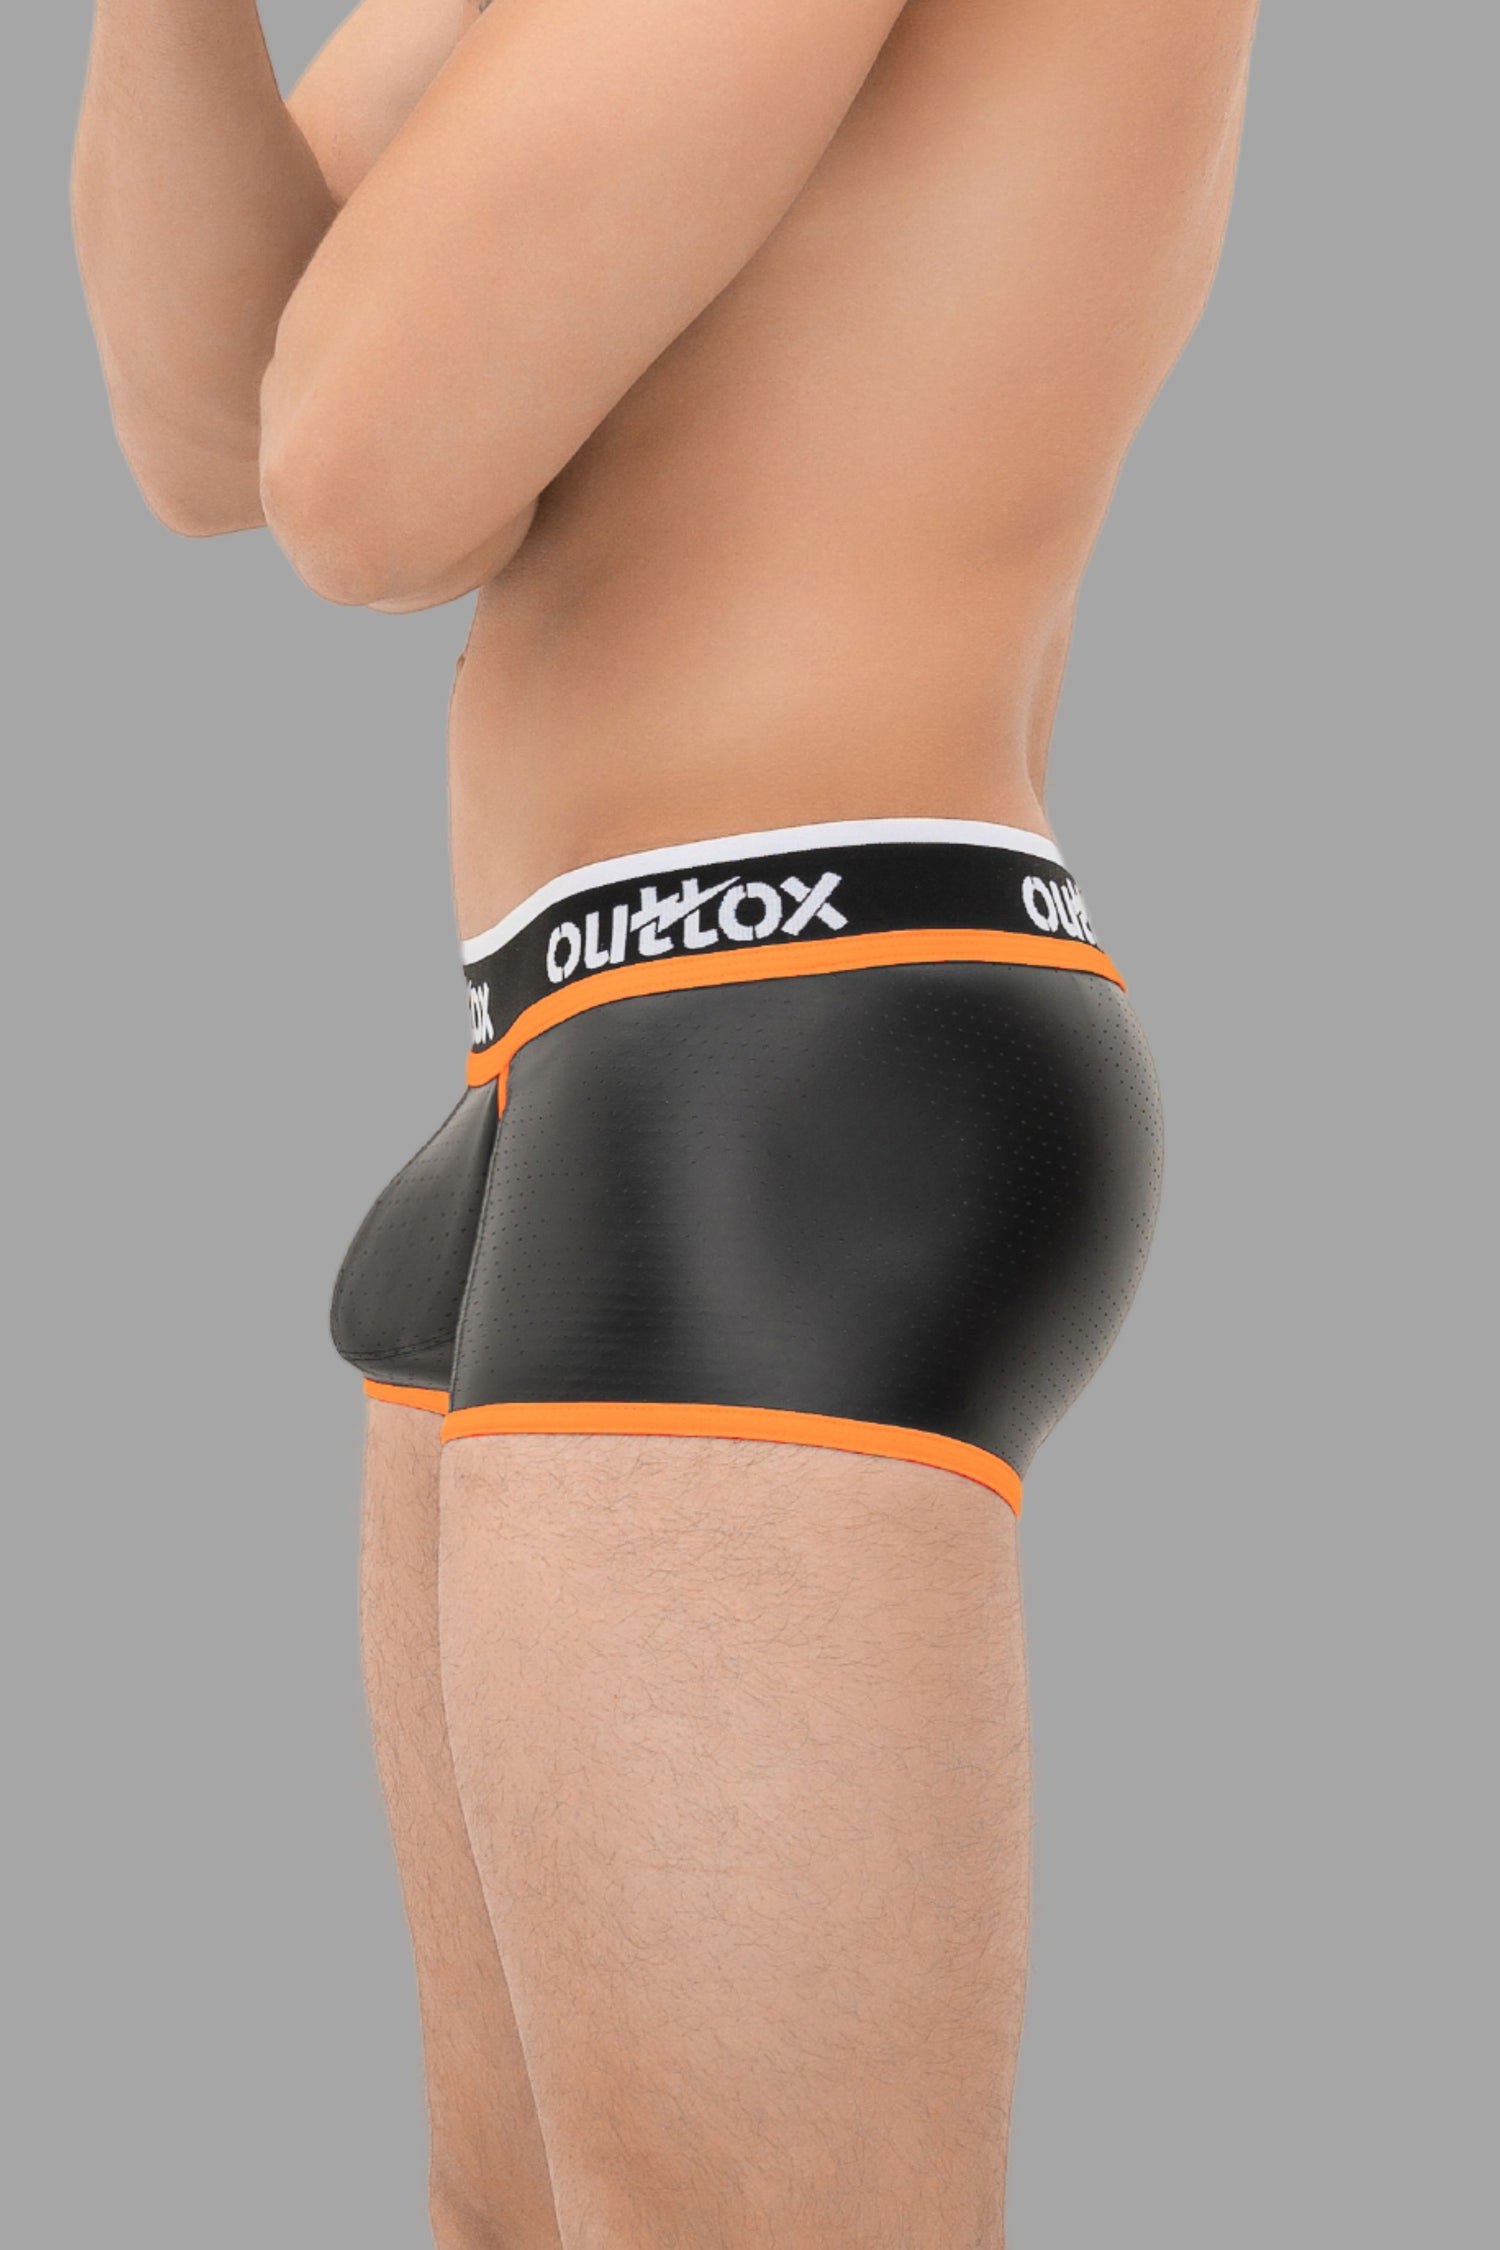 Outtox. Pantalones cortos traseros envueltos con bragueta a presión. Negro+Naranja